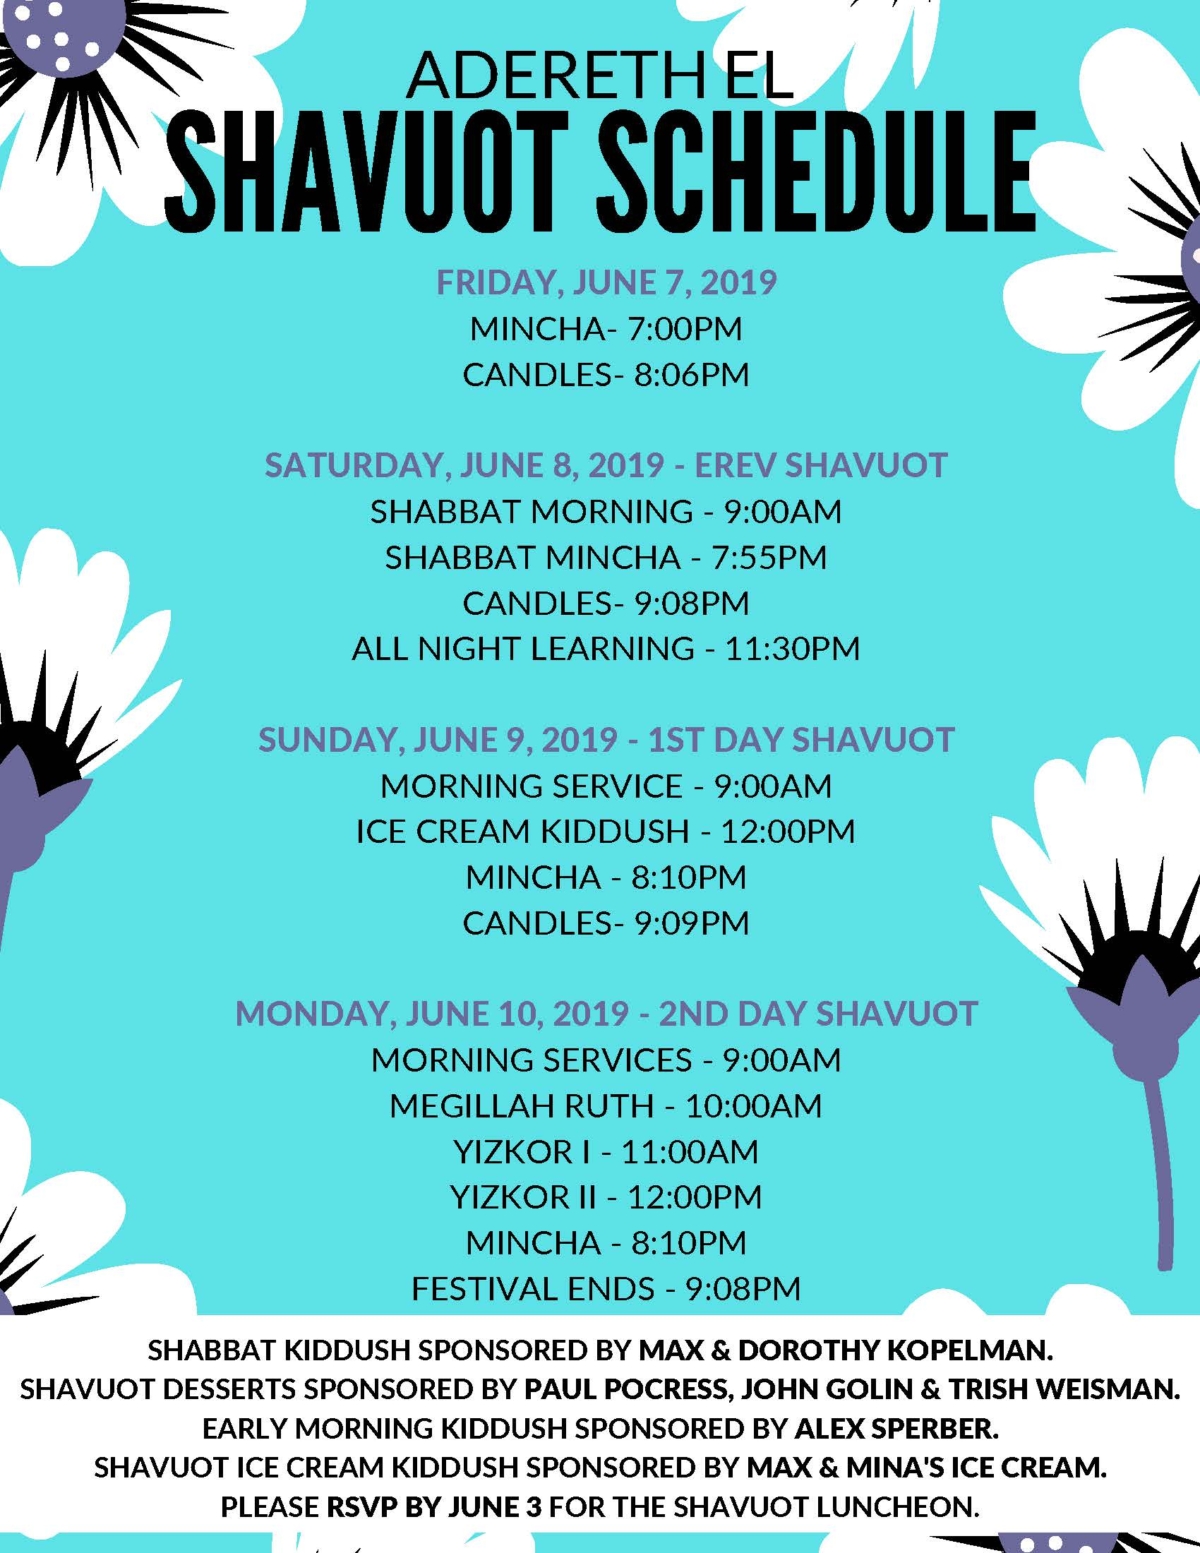 Shavuot Schedule Adereth El